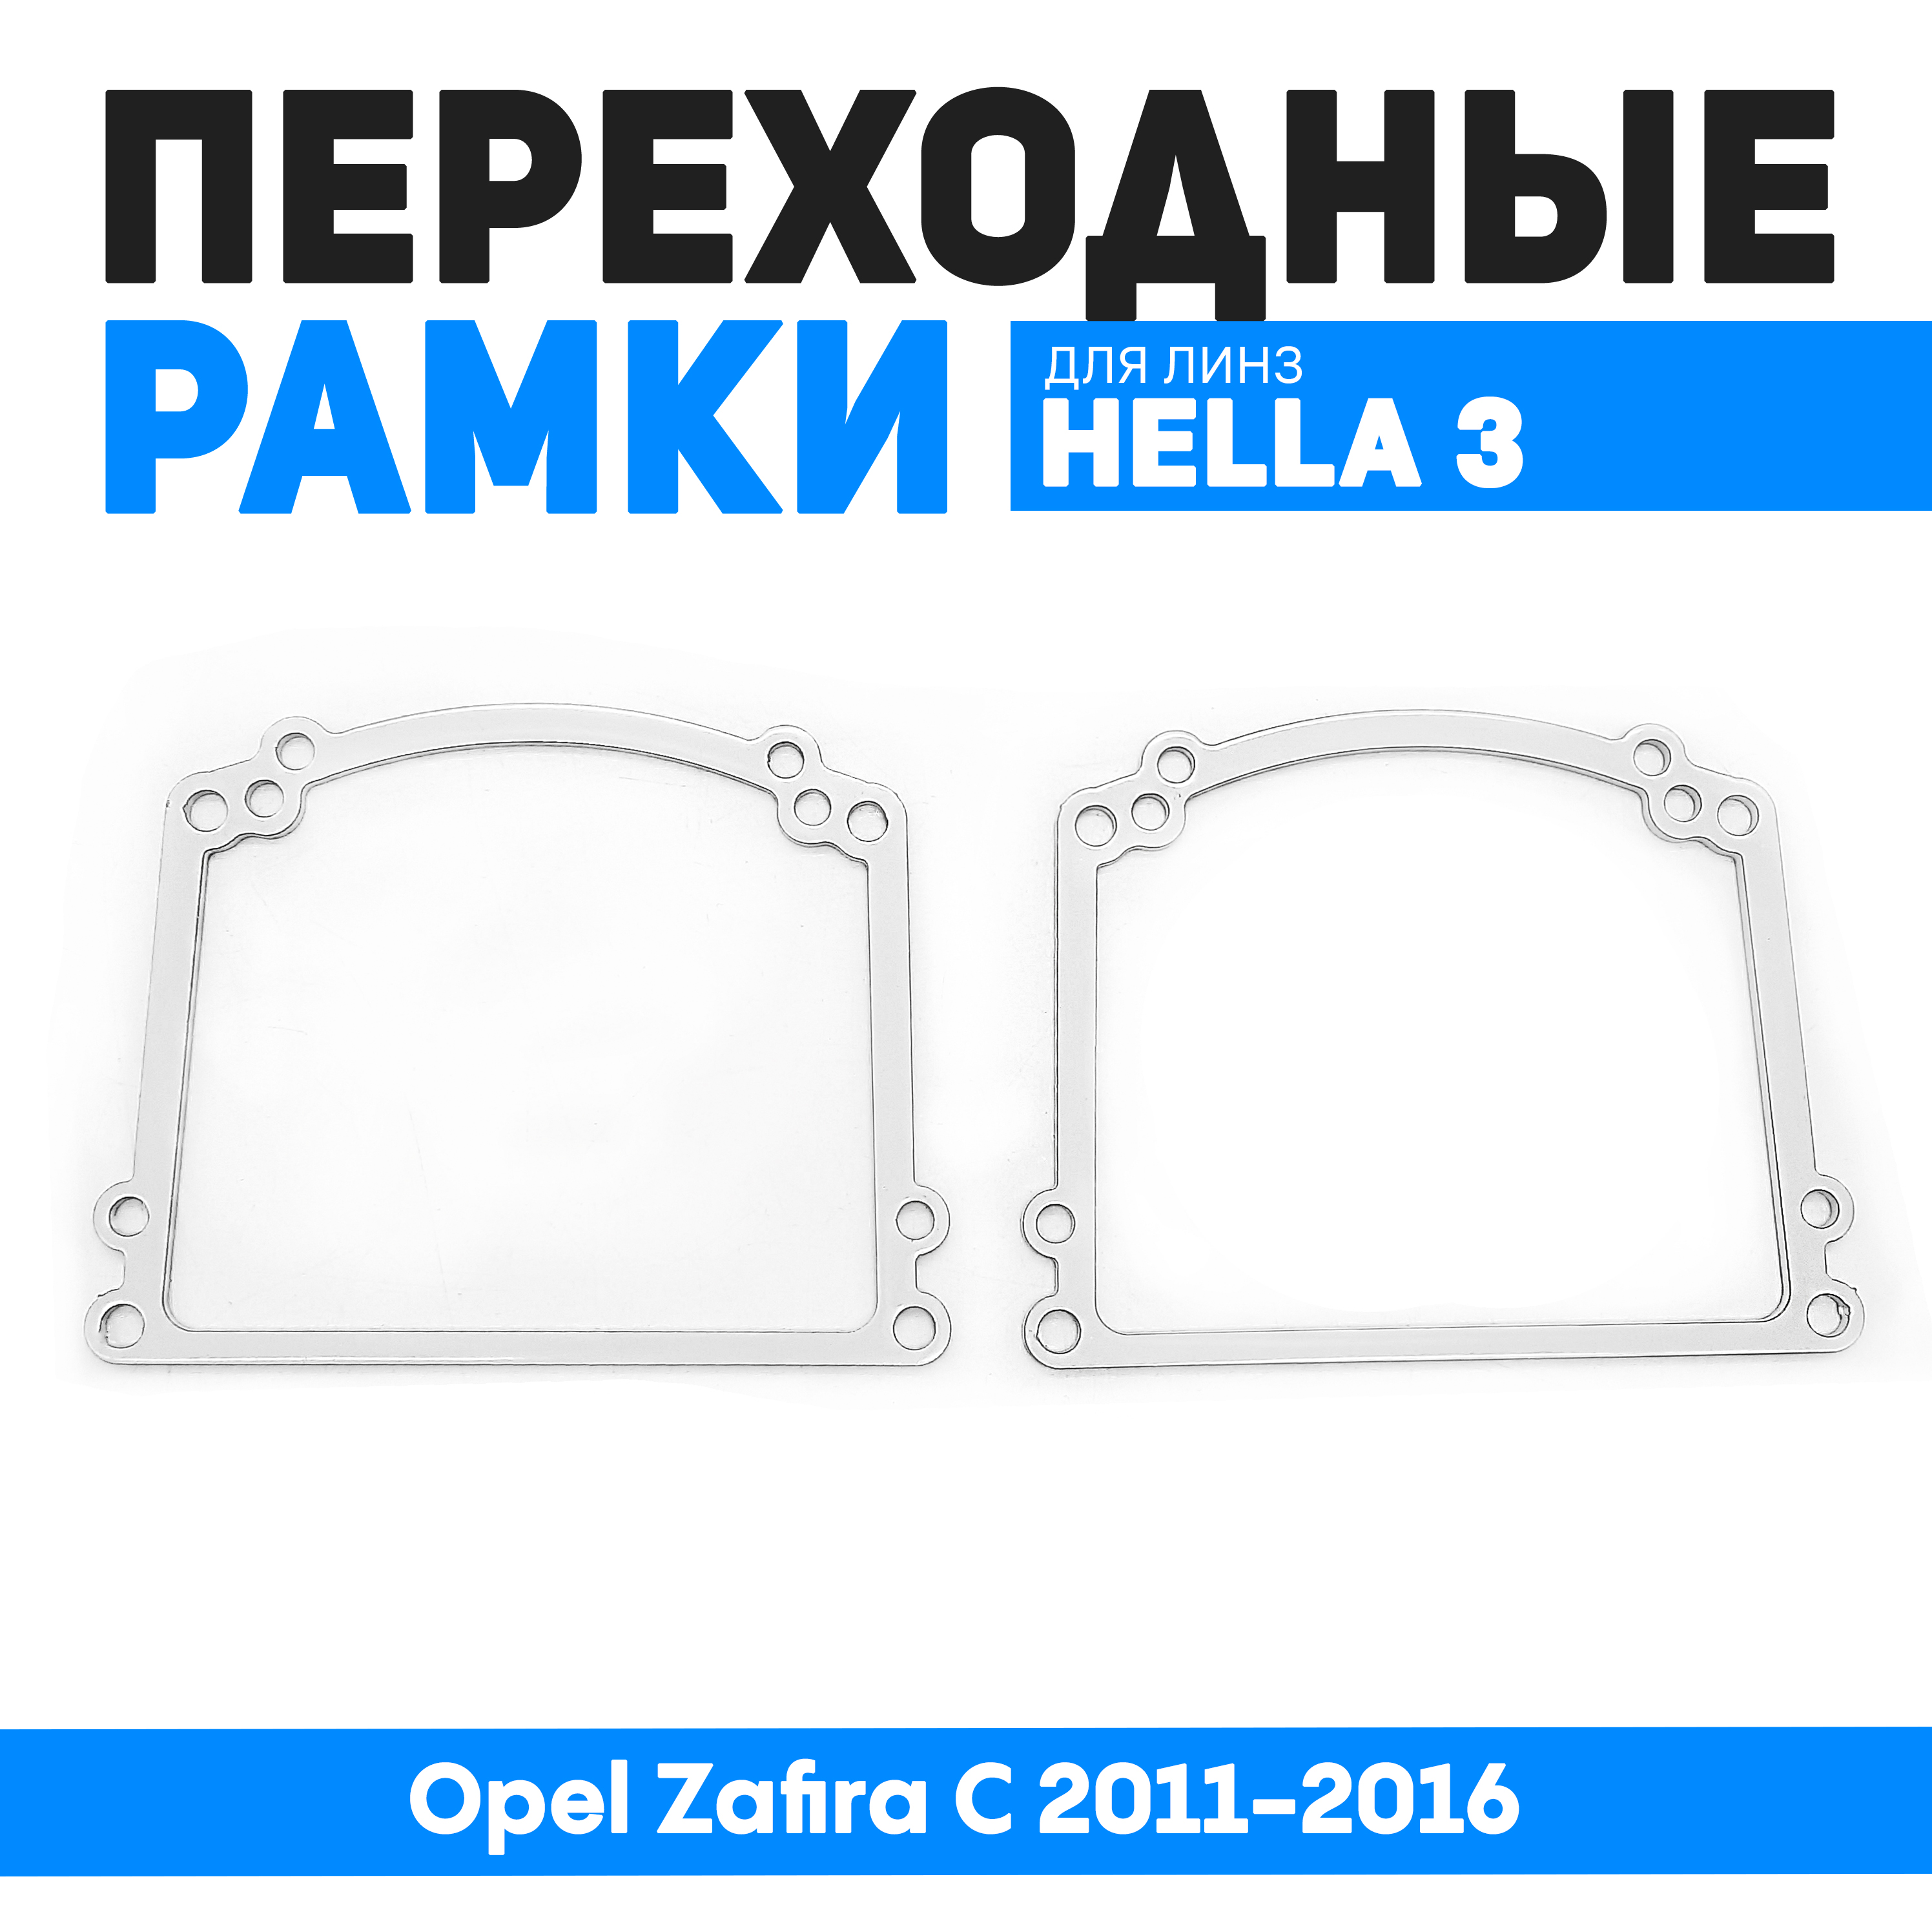 Переходные рамки Bunker-Svet для замены линз Opel Zafira C 2011-2016